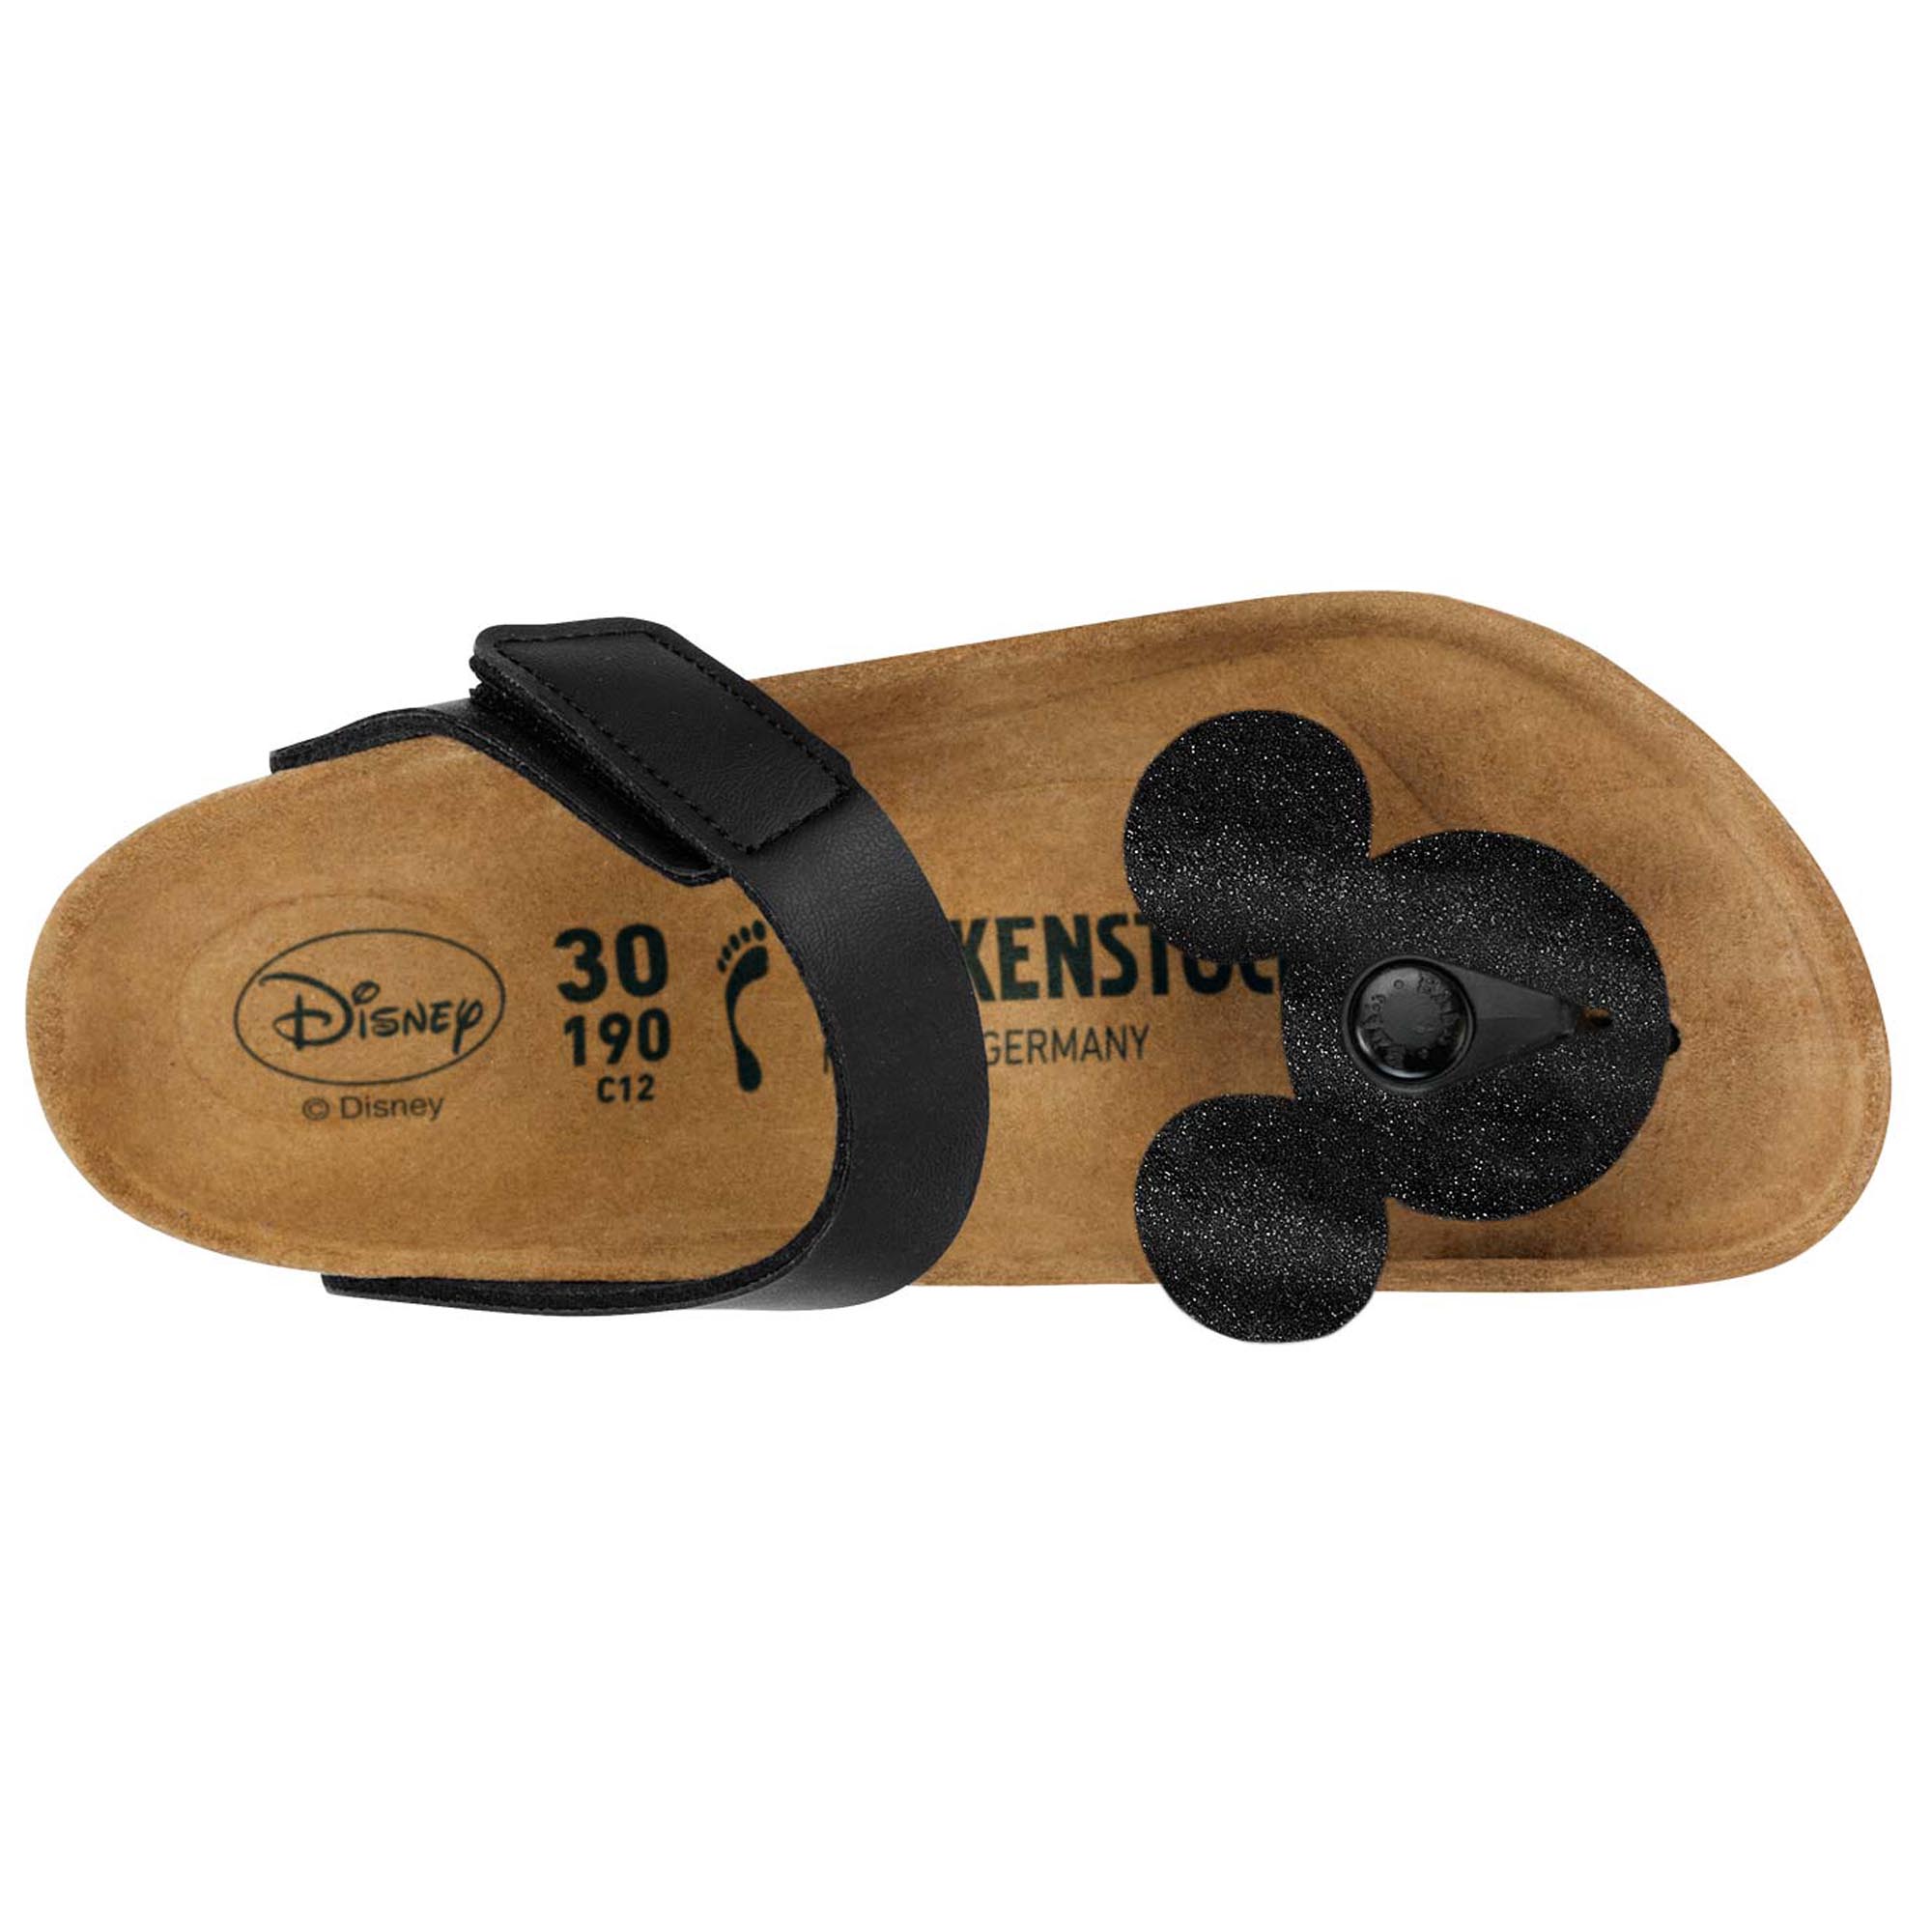 disney birkenstock sandals